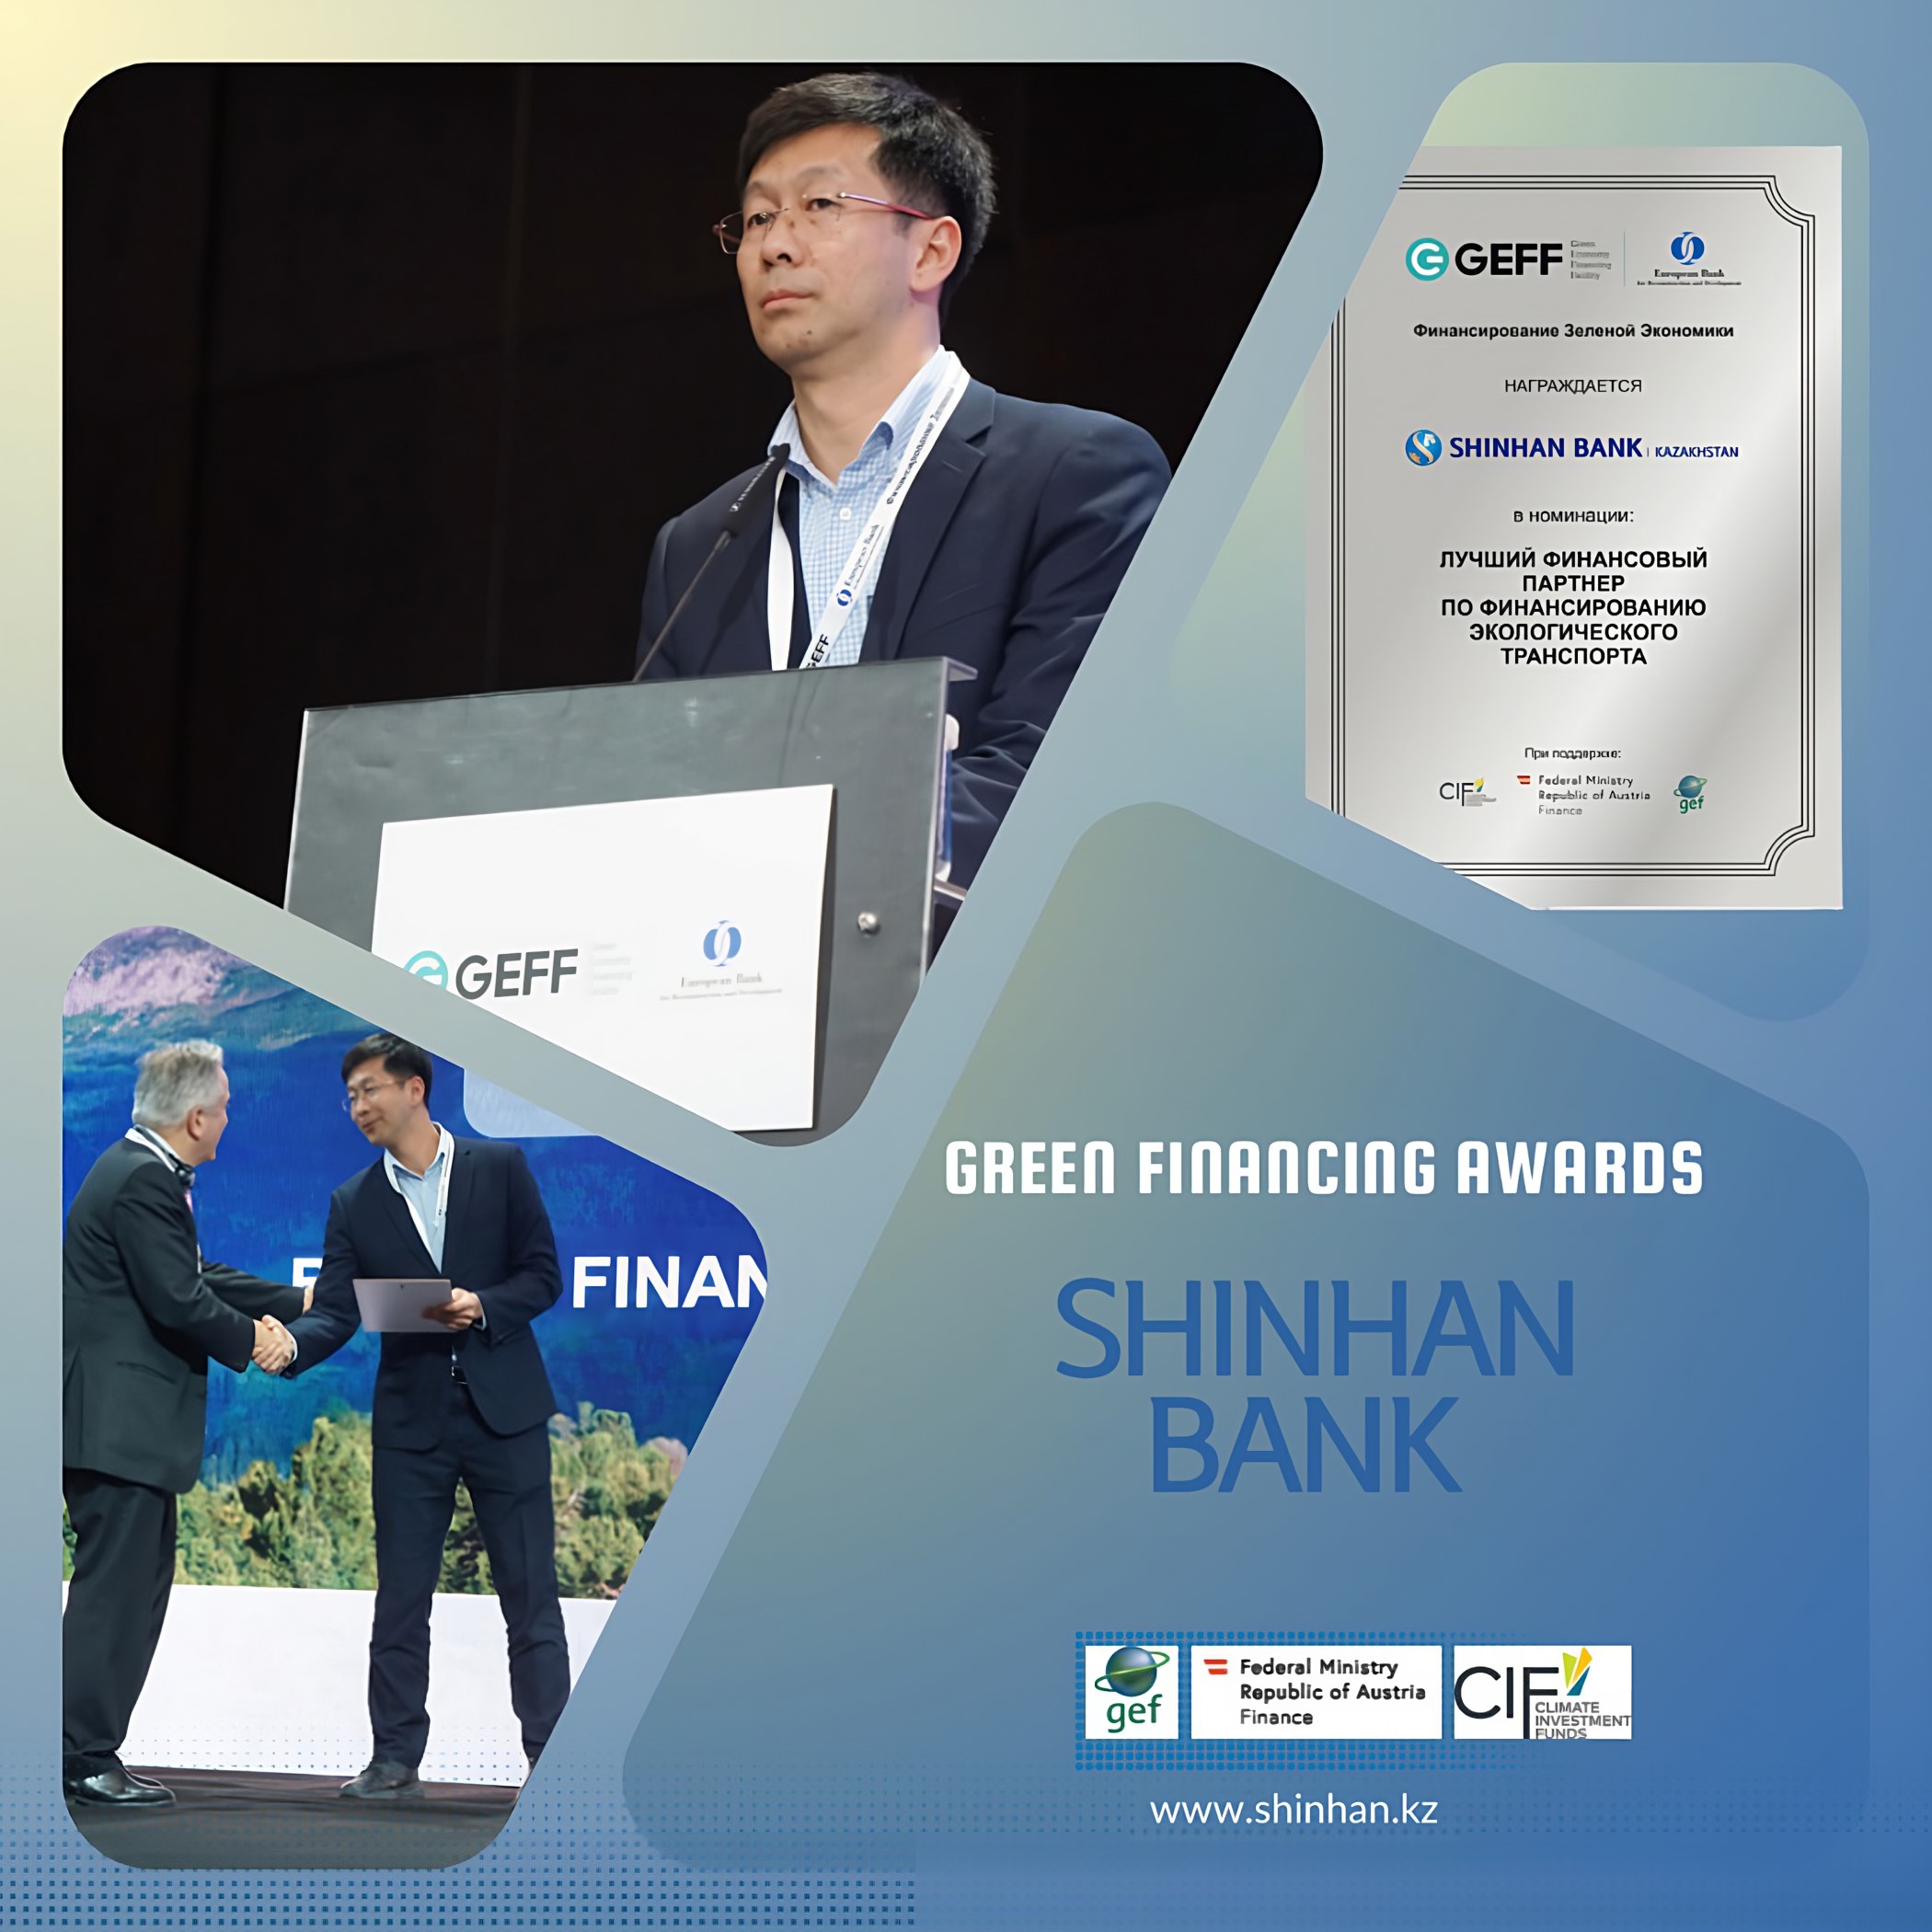 Шинхан Банк Казахстан «Экологиялық көлікті қаржыландыру бойынша үздік қаржылық серіктес» номинациясы бойынша марапатқа ие болды.